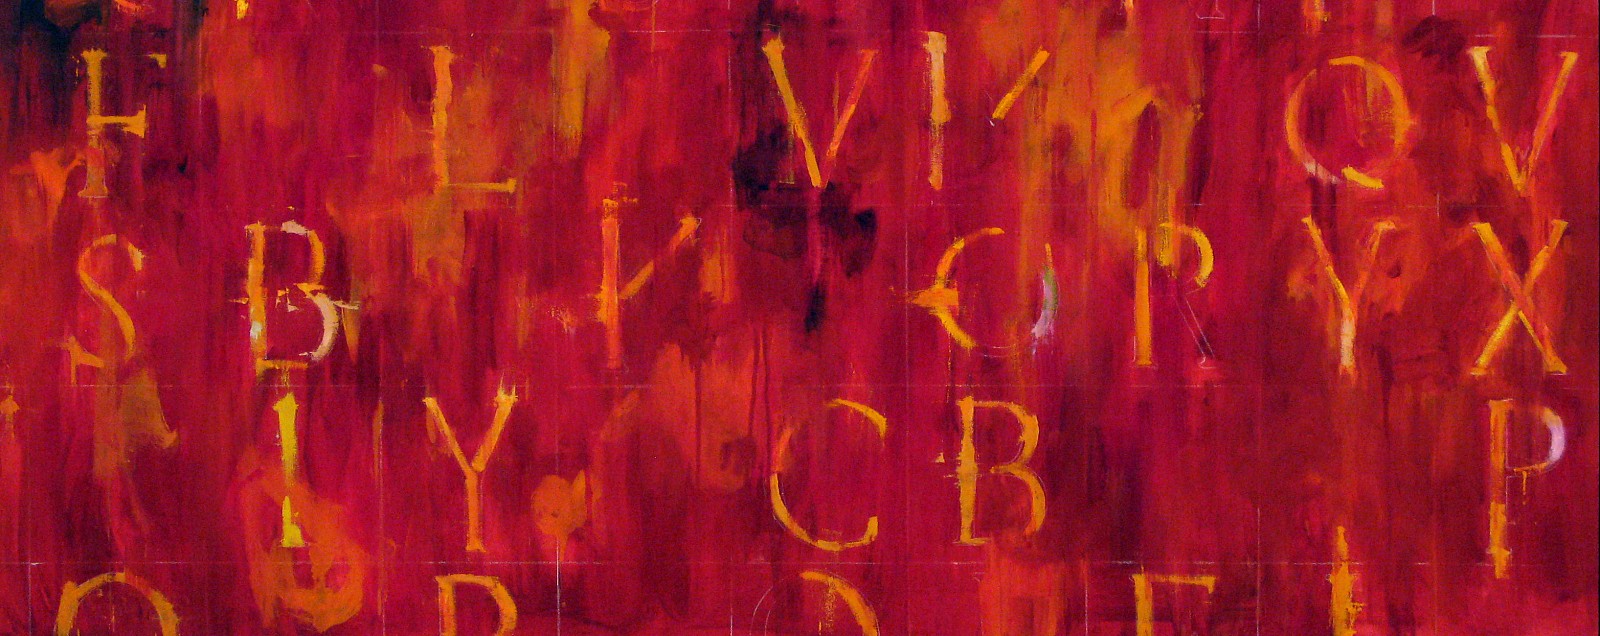 Kikuo Saito, Red Petra, 2006
Oil on Canvas, 37 x 92 inches
SAIT0007
Sold